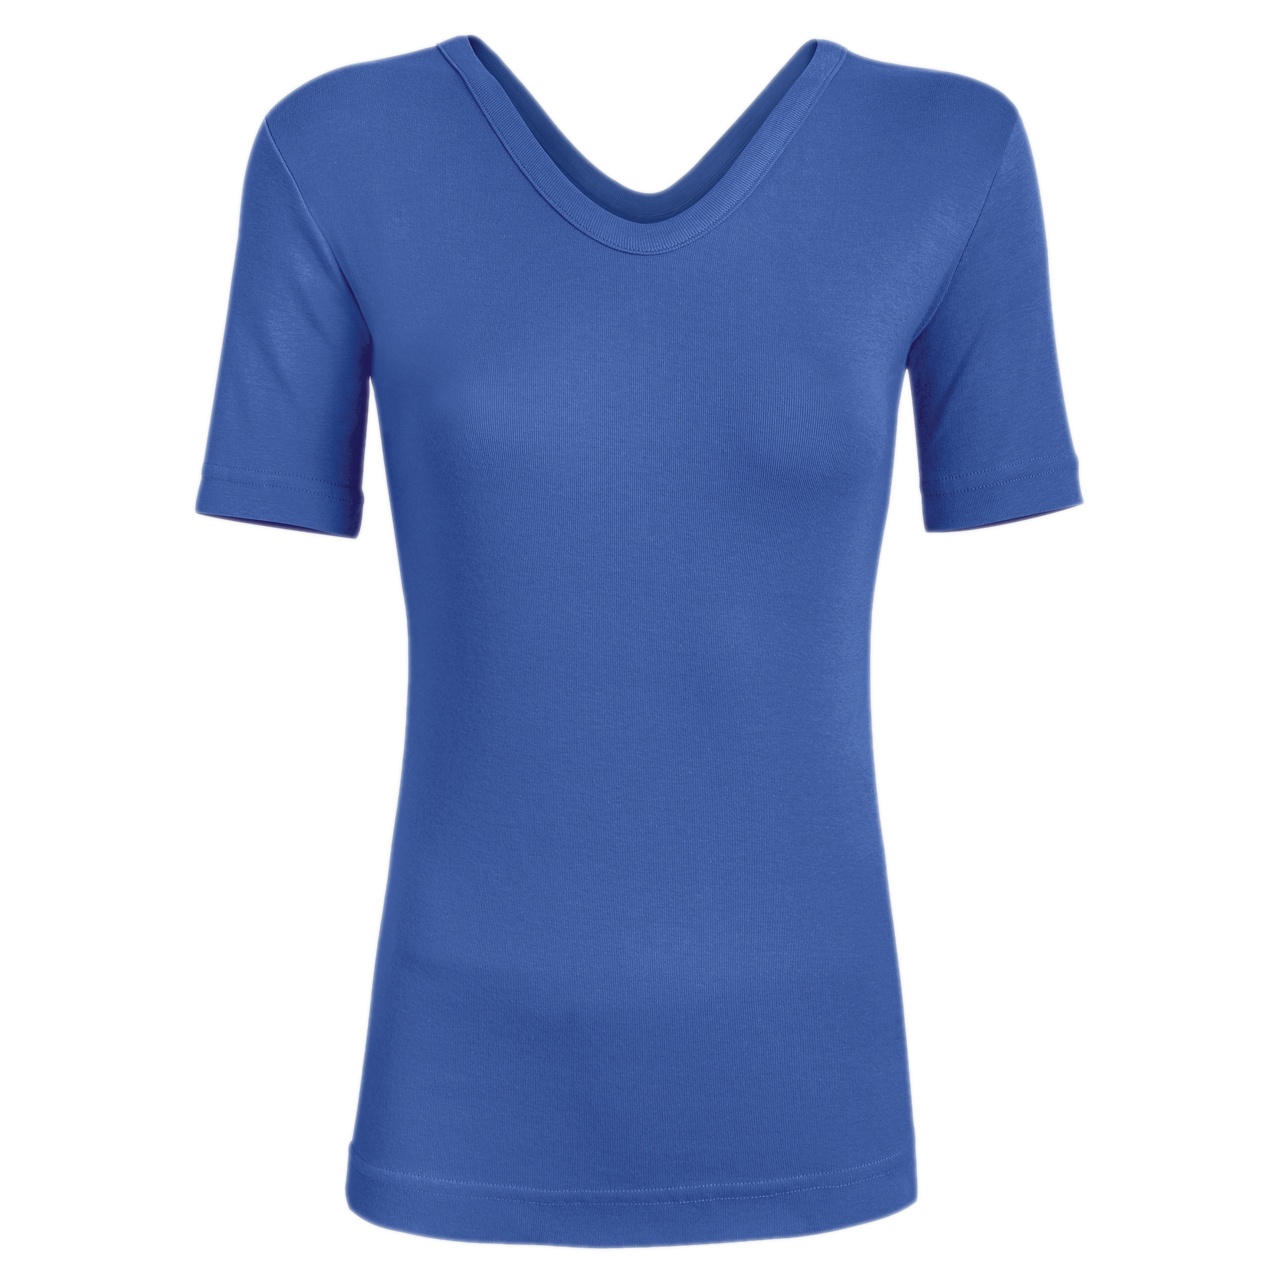 تی شرت زنانه ساروک مدل TZYVFPB08 رنگ آبی